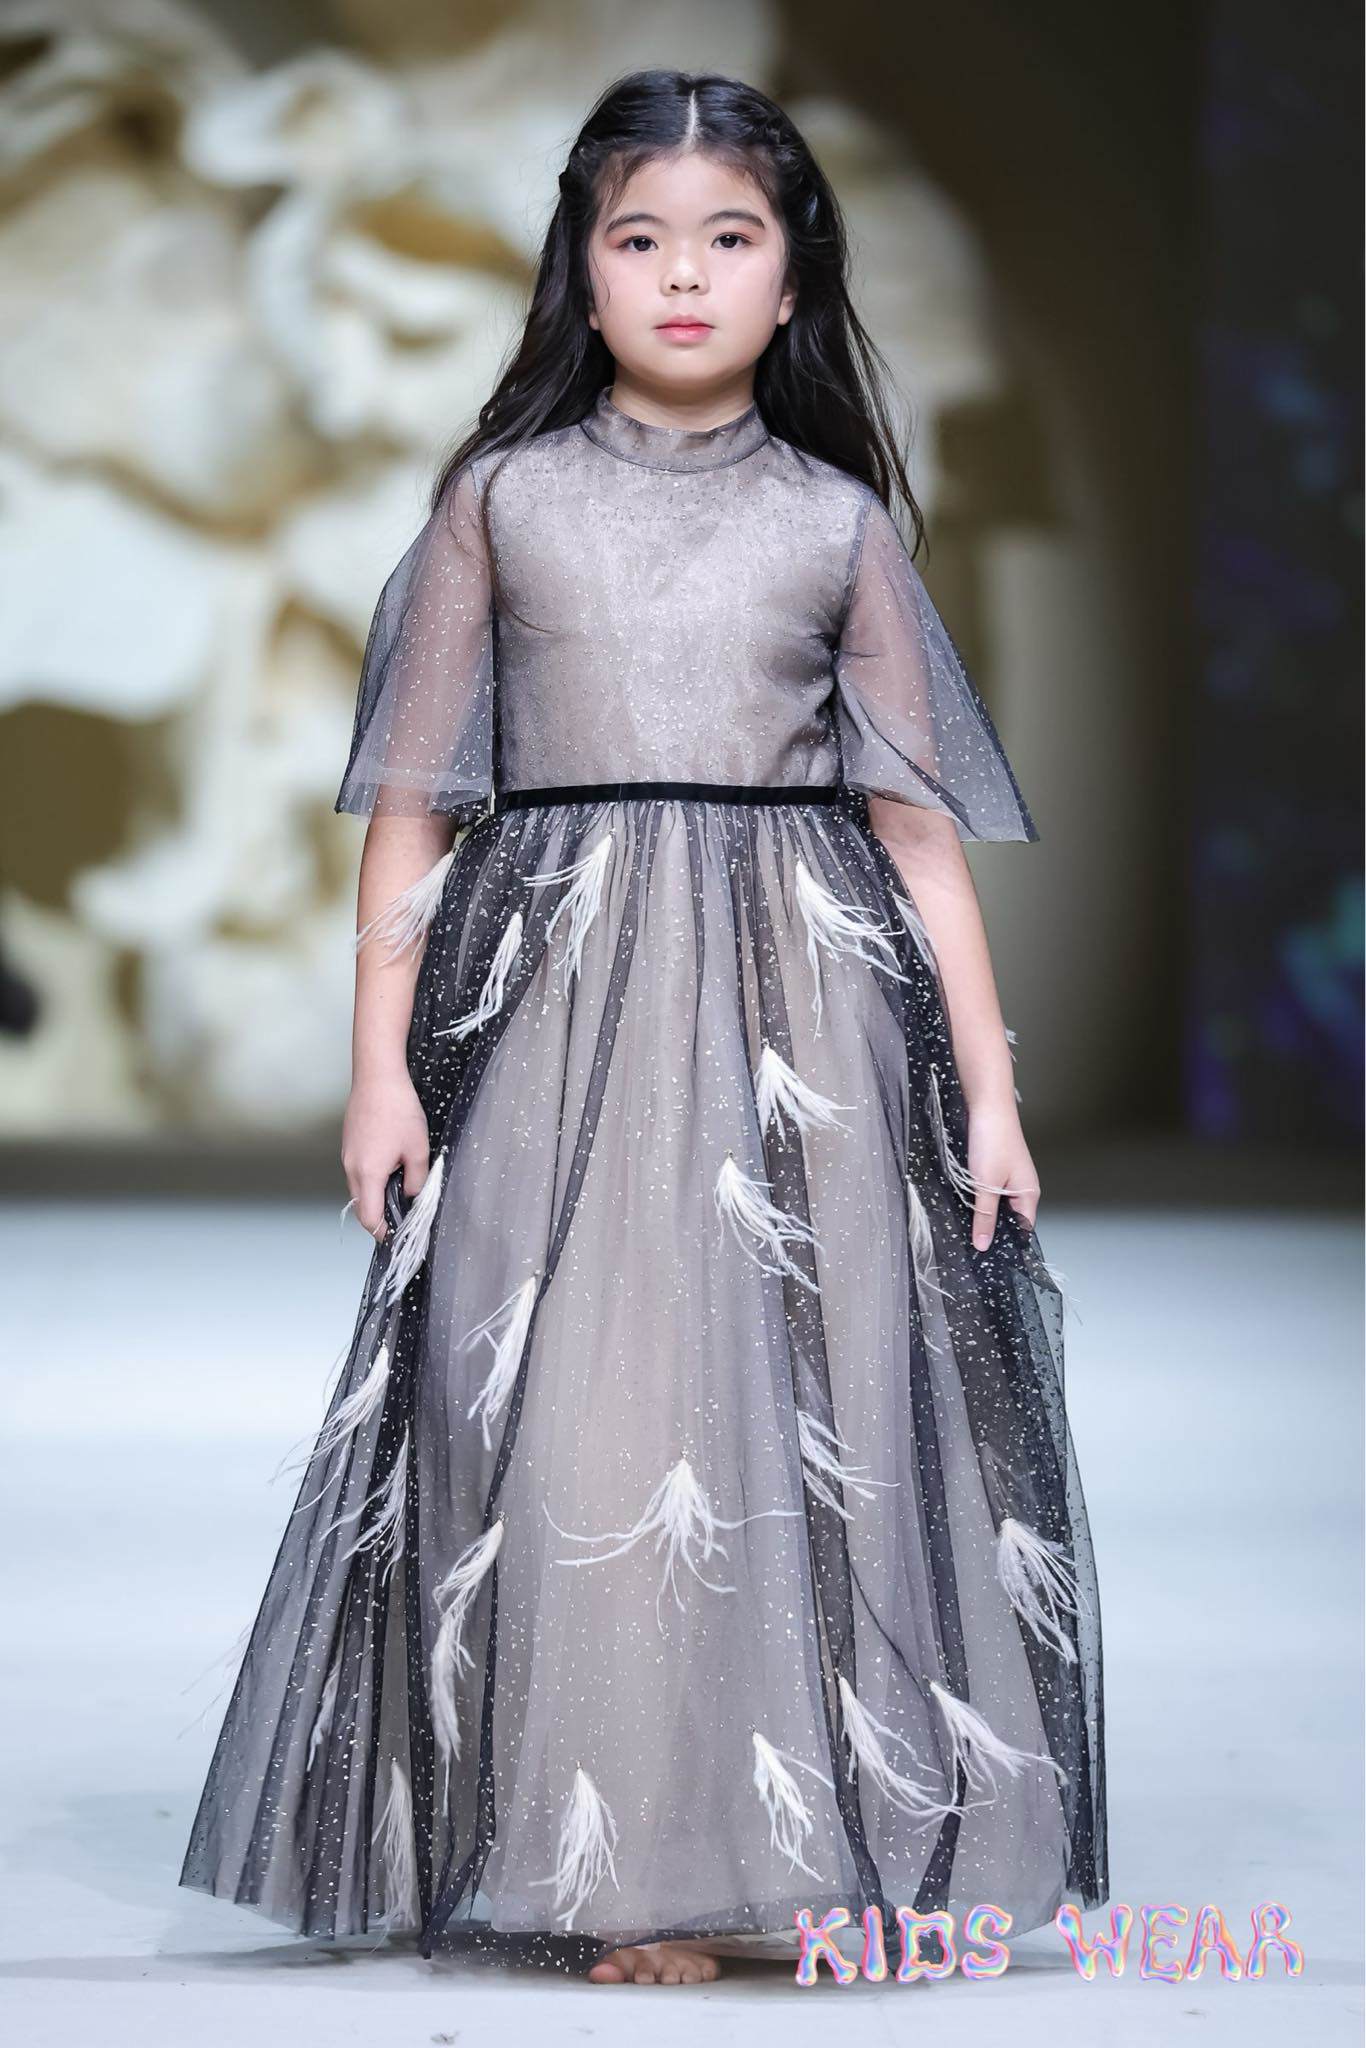 Mẫu nhí 10 tuổi chinh phục Tuần lễ thời trang Thượng Hải - 5